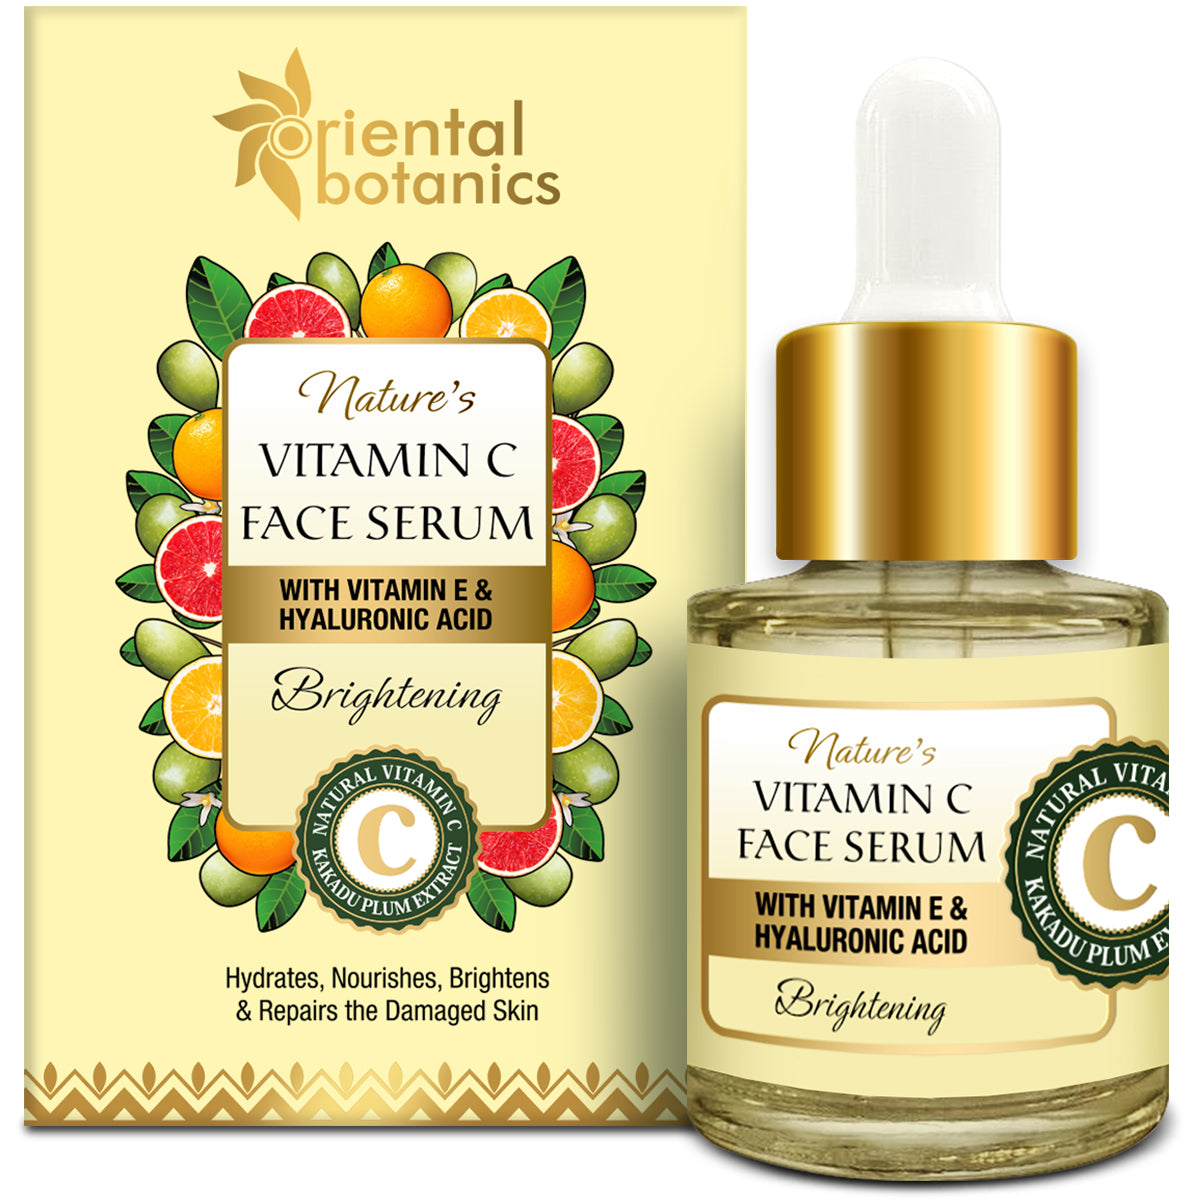 Oriental Botanics Nature's Vitamin C Brightening Face Serum With Vitamin E and Hyaluronic Acid - With Kakadu Plum, 20 ml